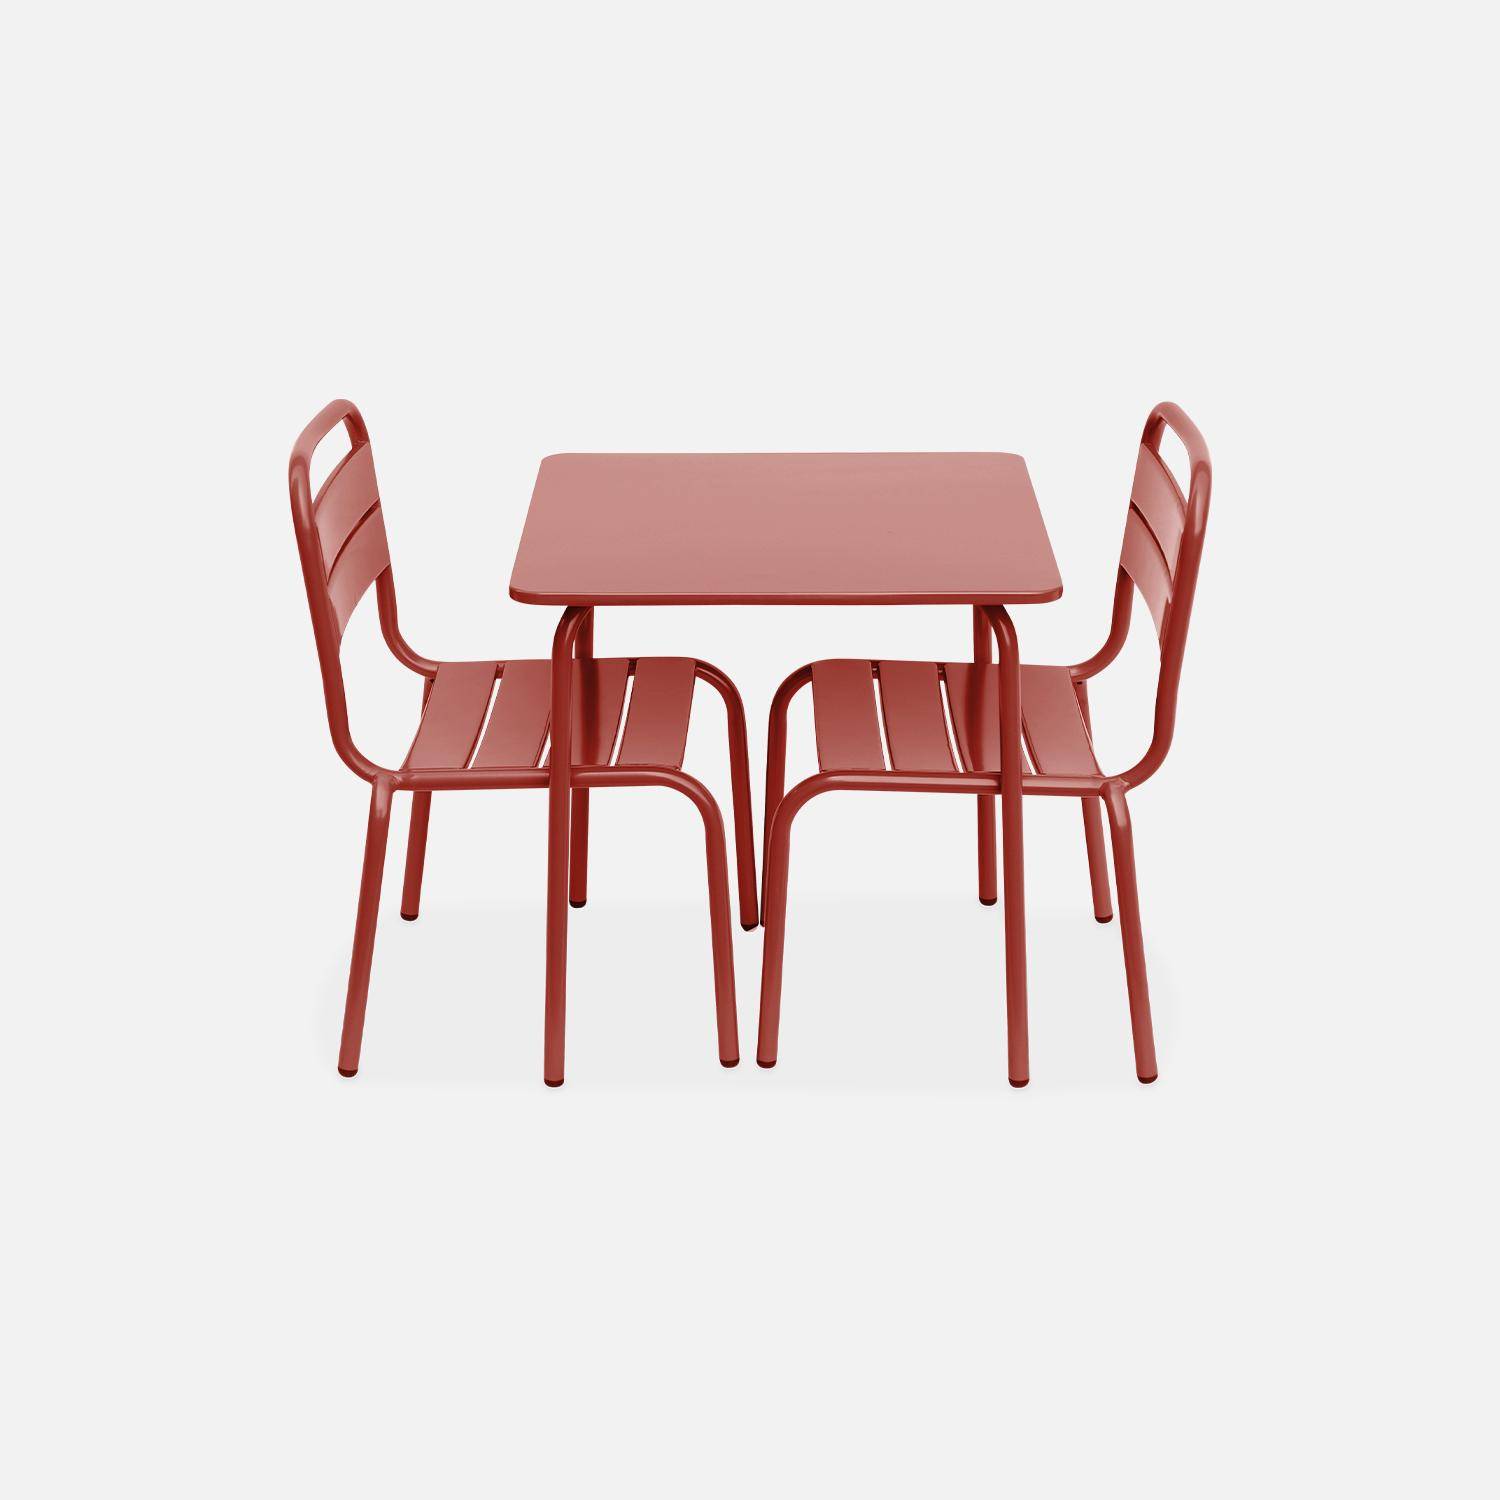 Tisch 48x48cm und 2 Stühle für Kinder, terrakotta, 48x48cm, für draußen verwendbar - Anna Photo4